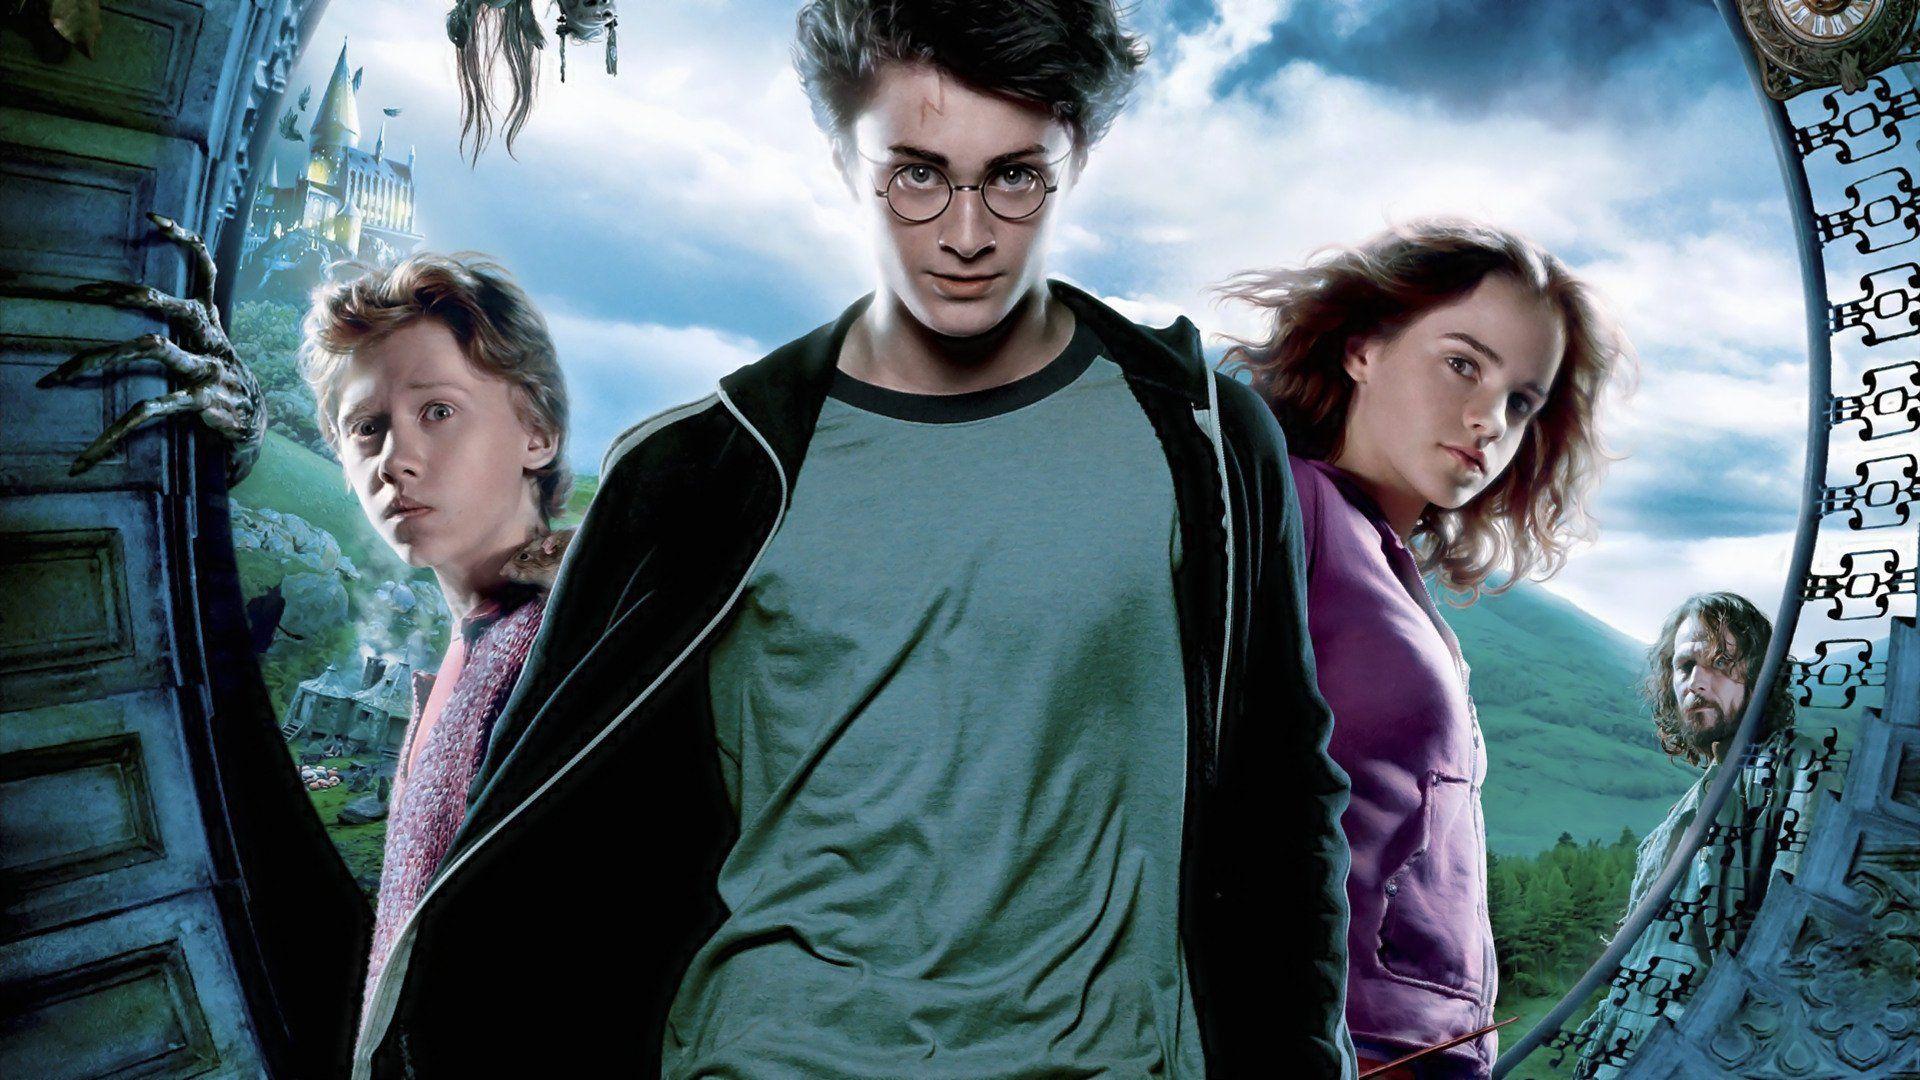 Harry Potter And The Prisoner Of Azkaban HD Wallpaper